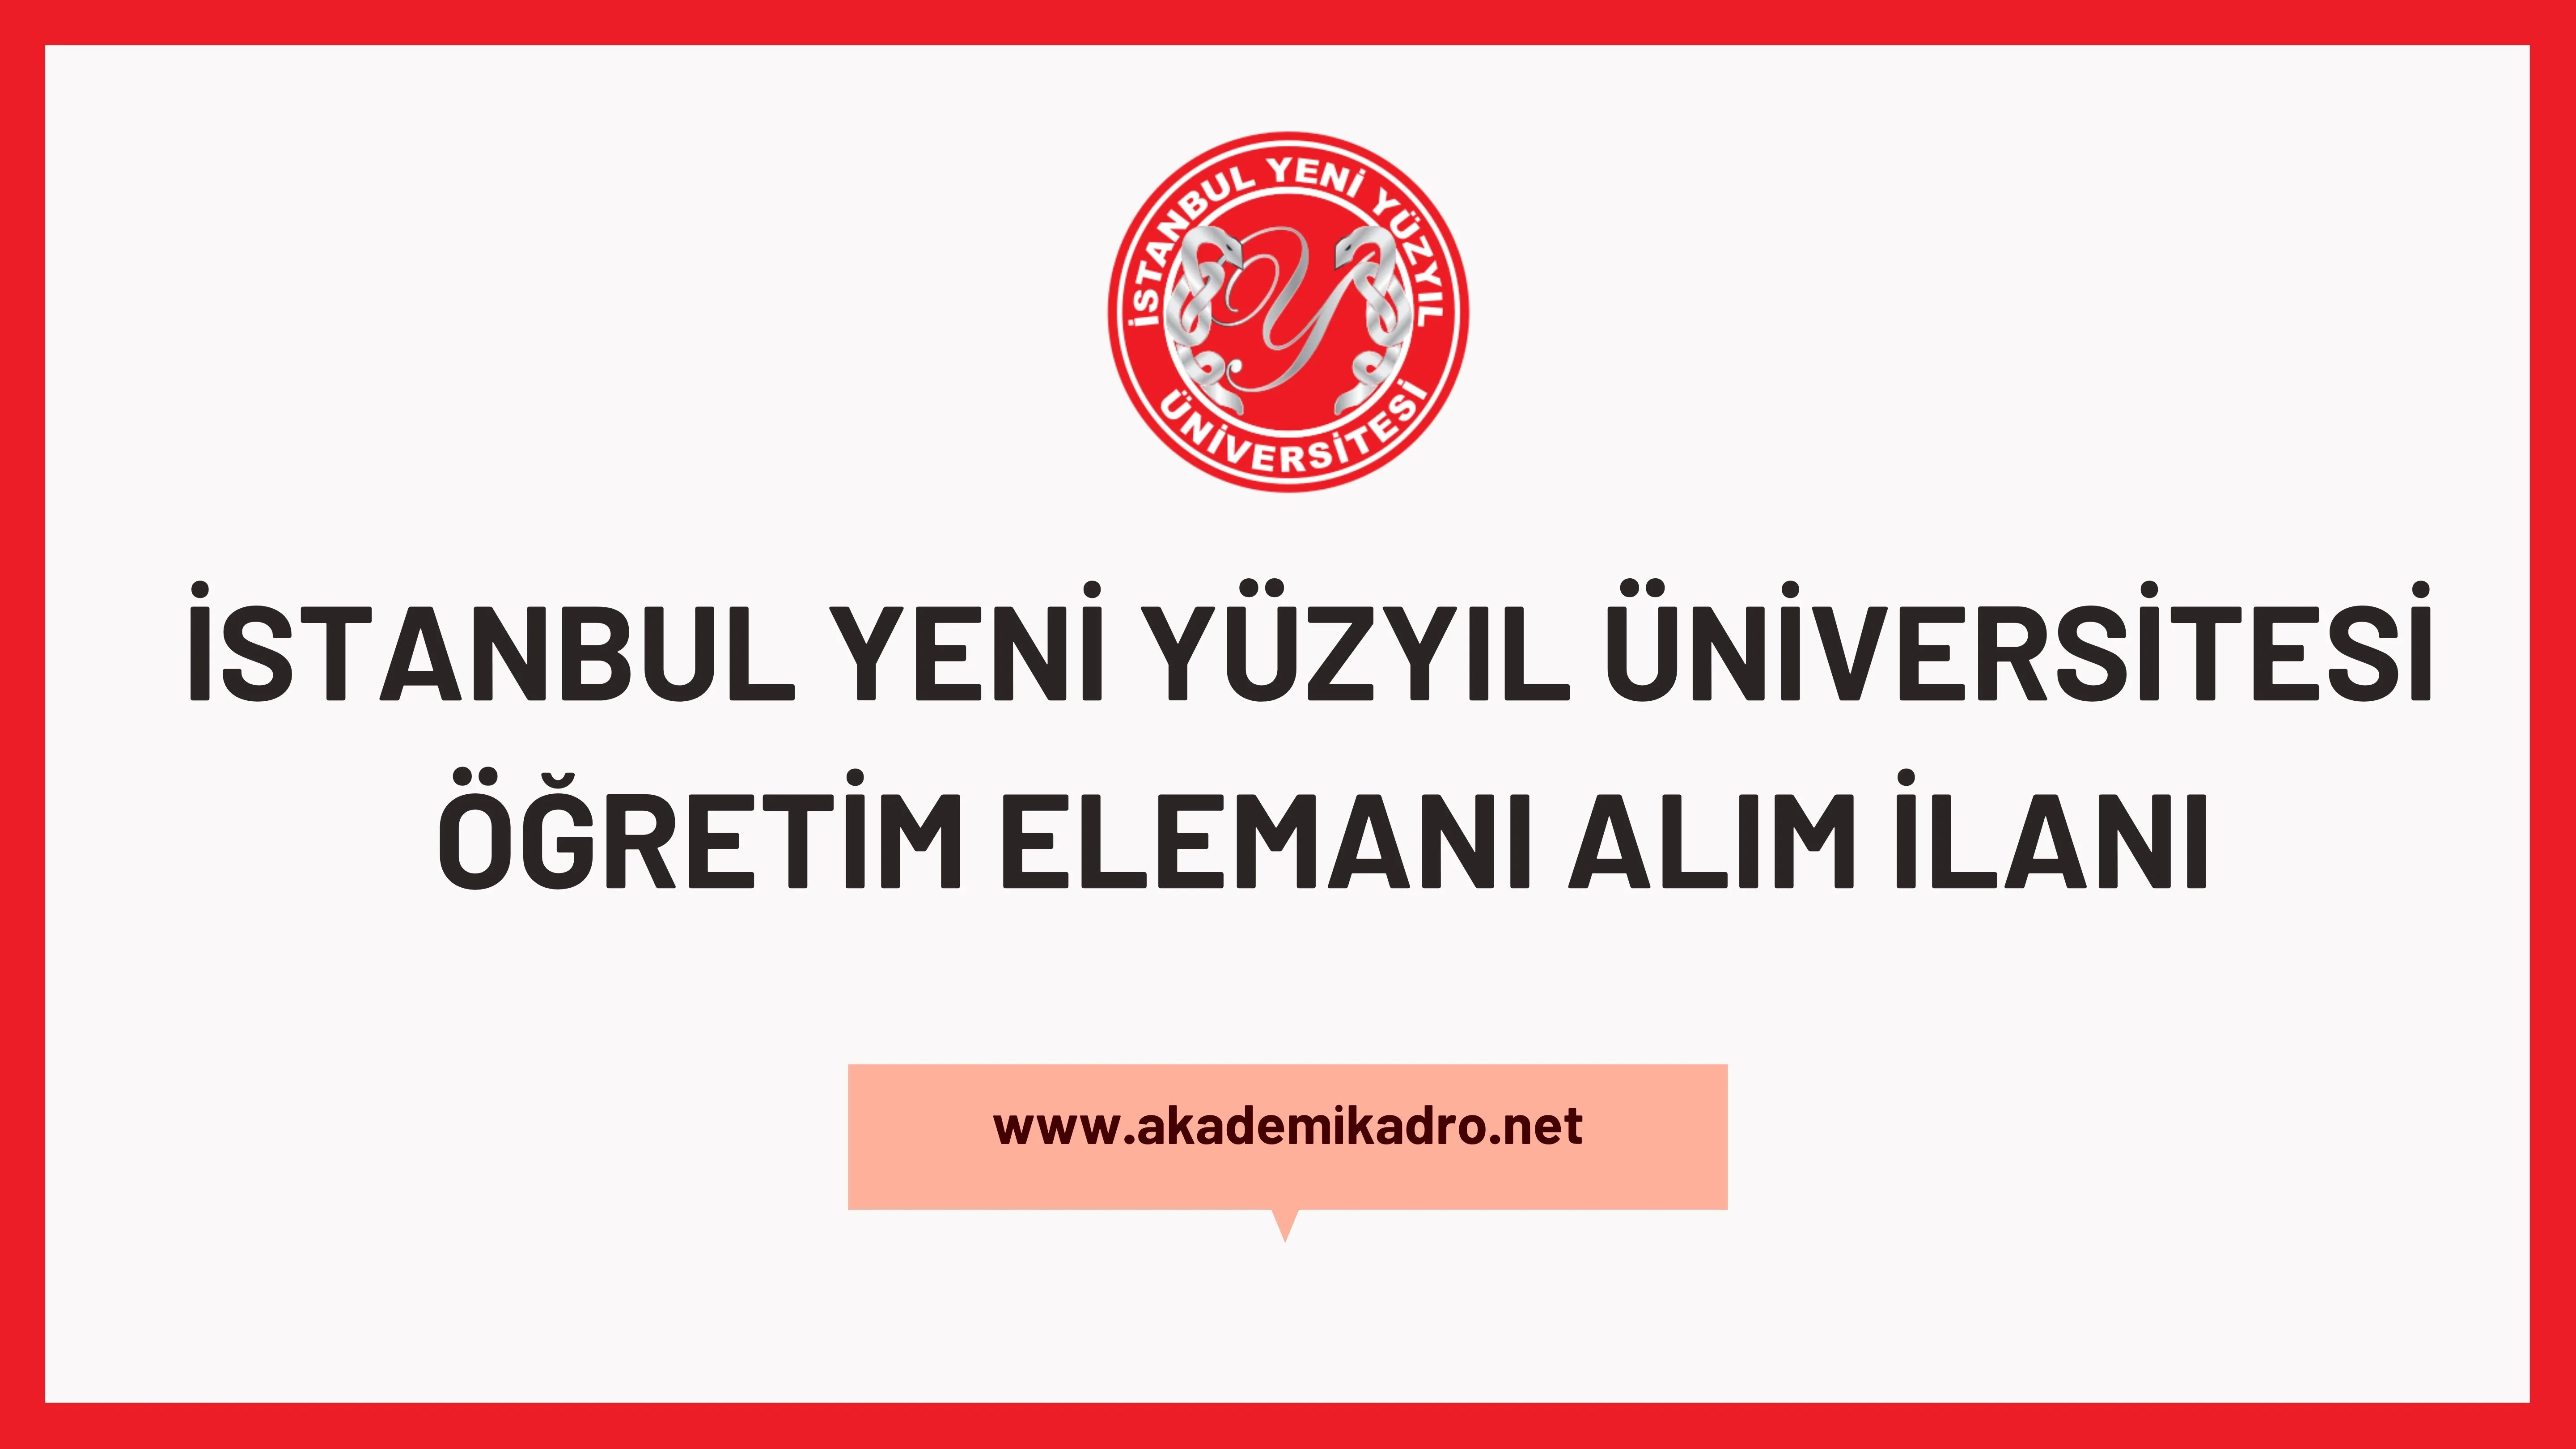 İstanbul Yeni Yüzyıl Üniversitesi 2 Öğretim Görevlisi, Araştırma görevlisi ve öğretim üyesi alacaktır.